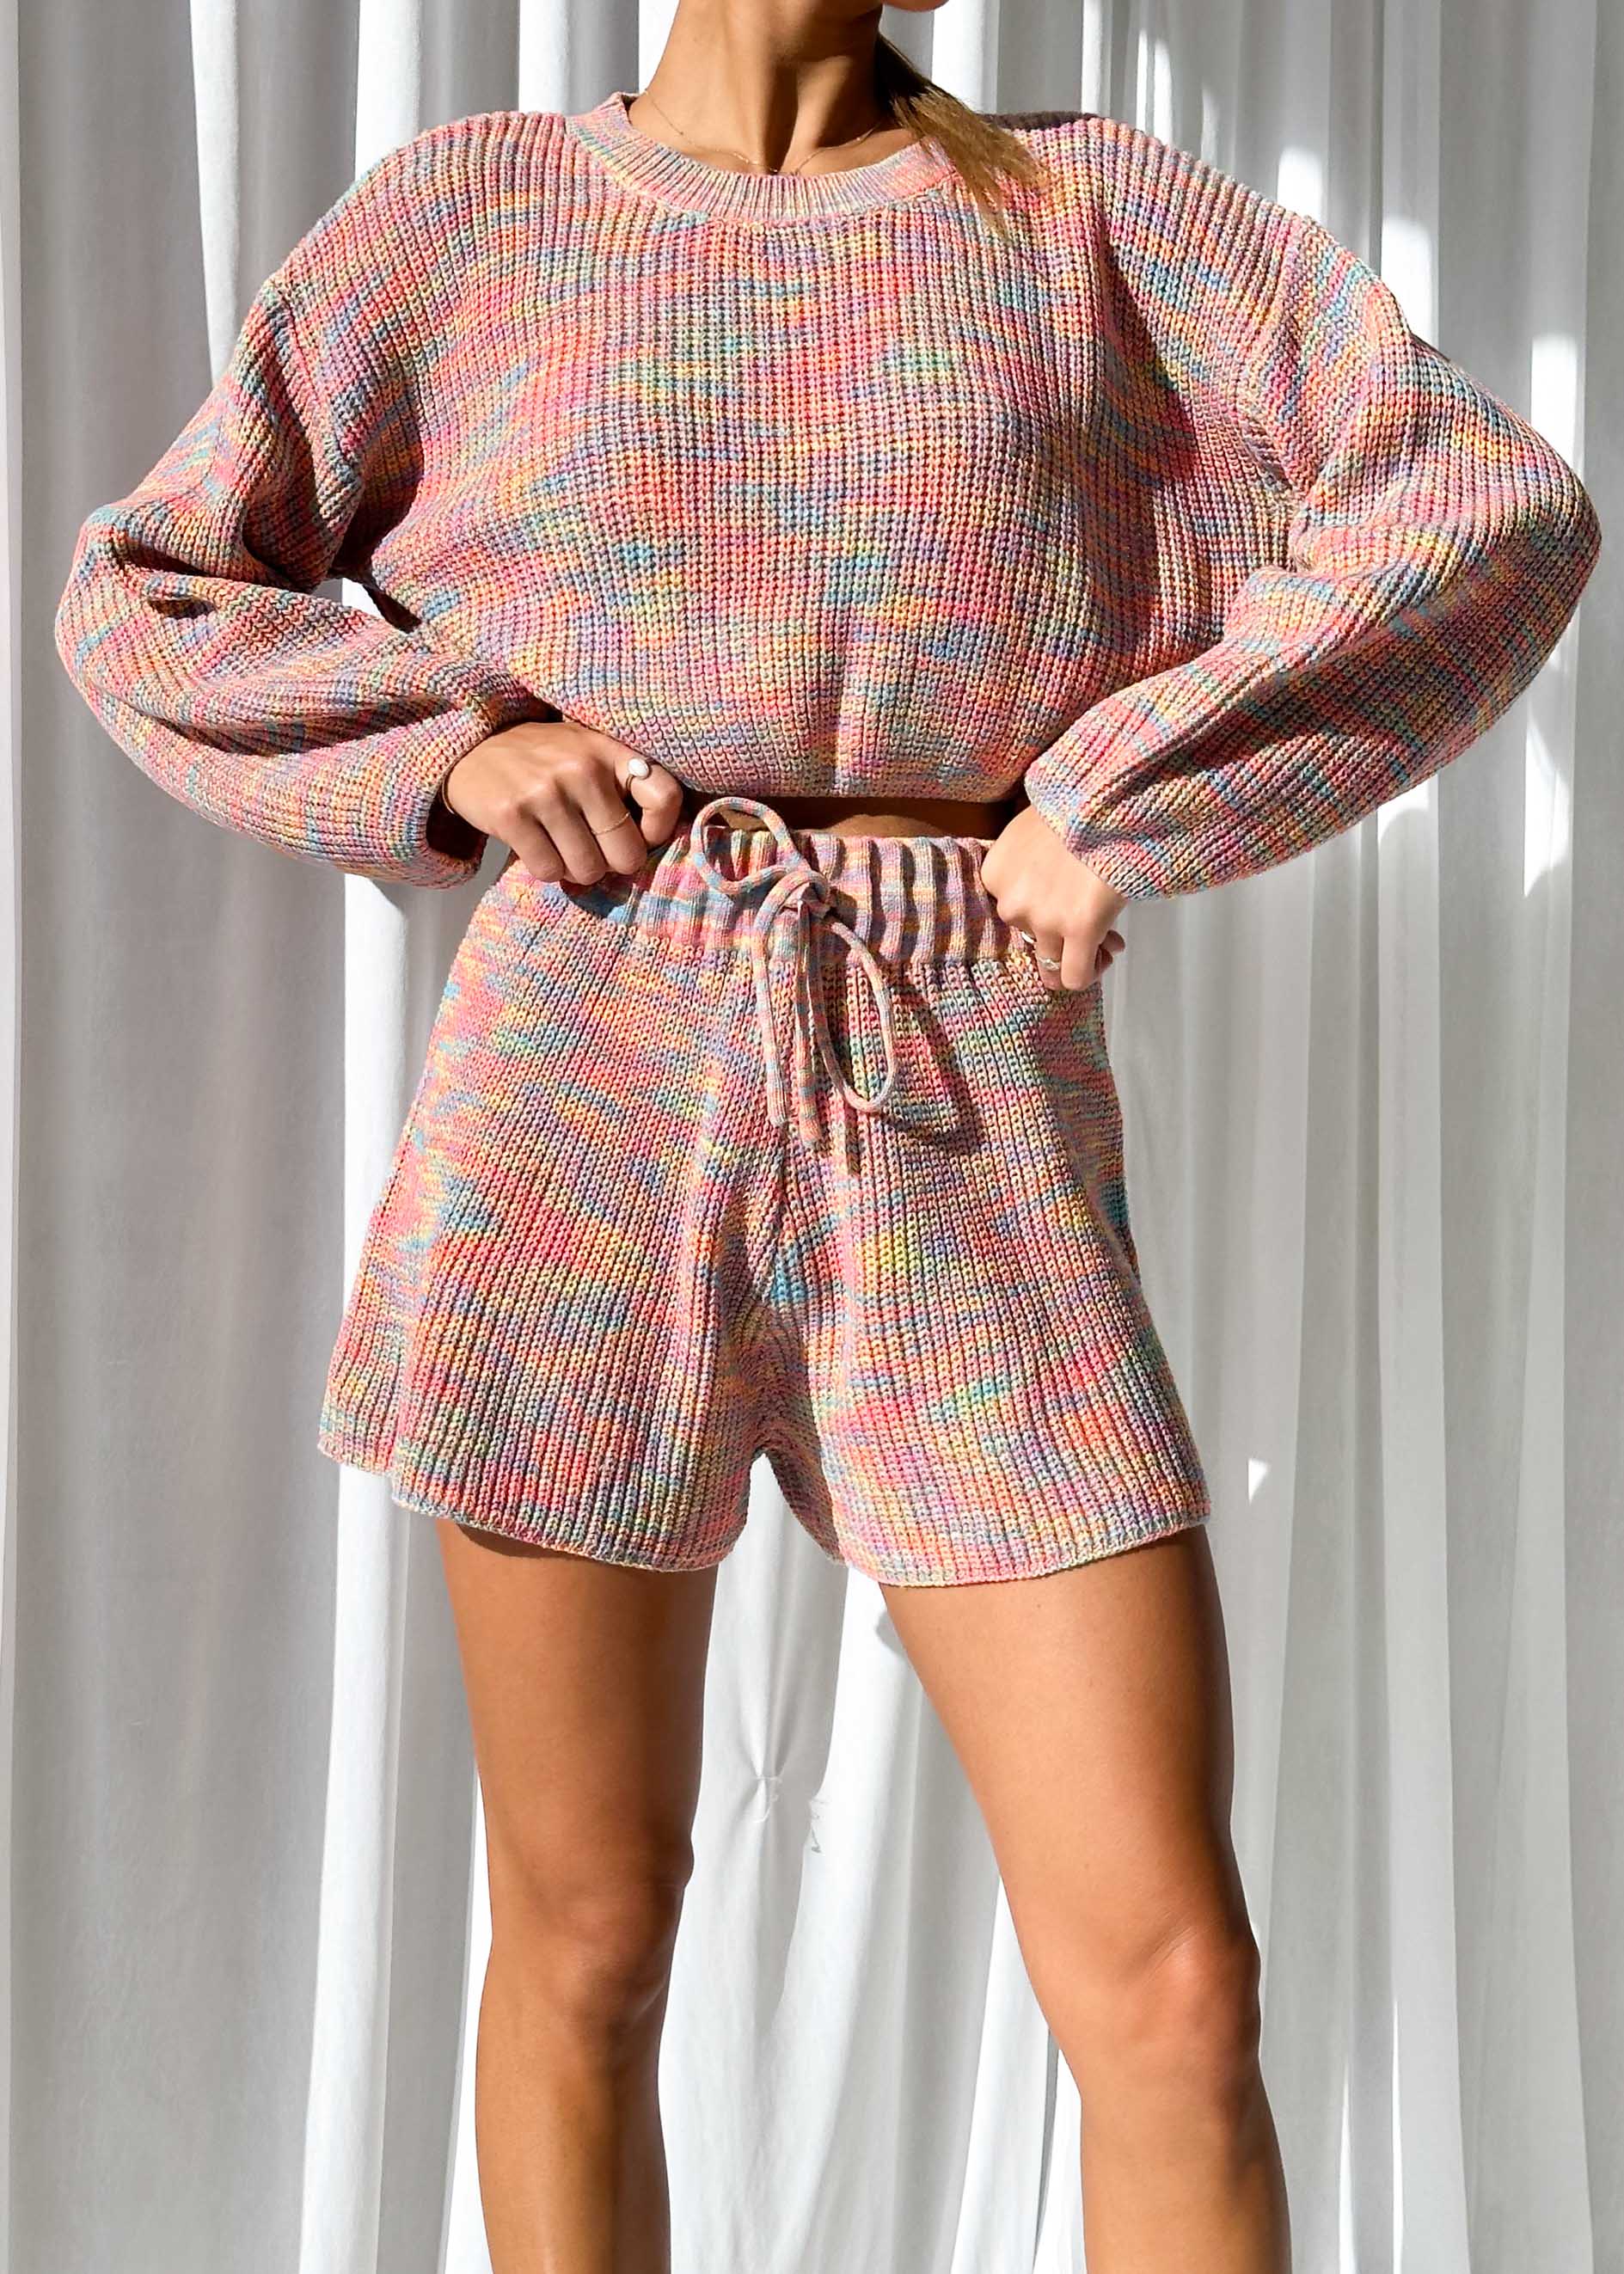 Luciana Knit Shorts - Pink Multi